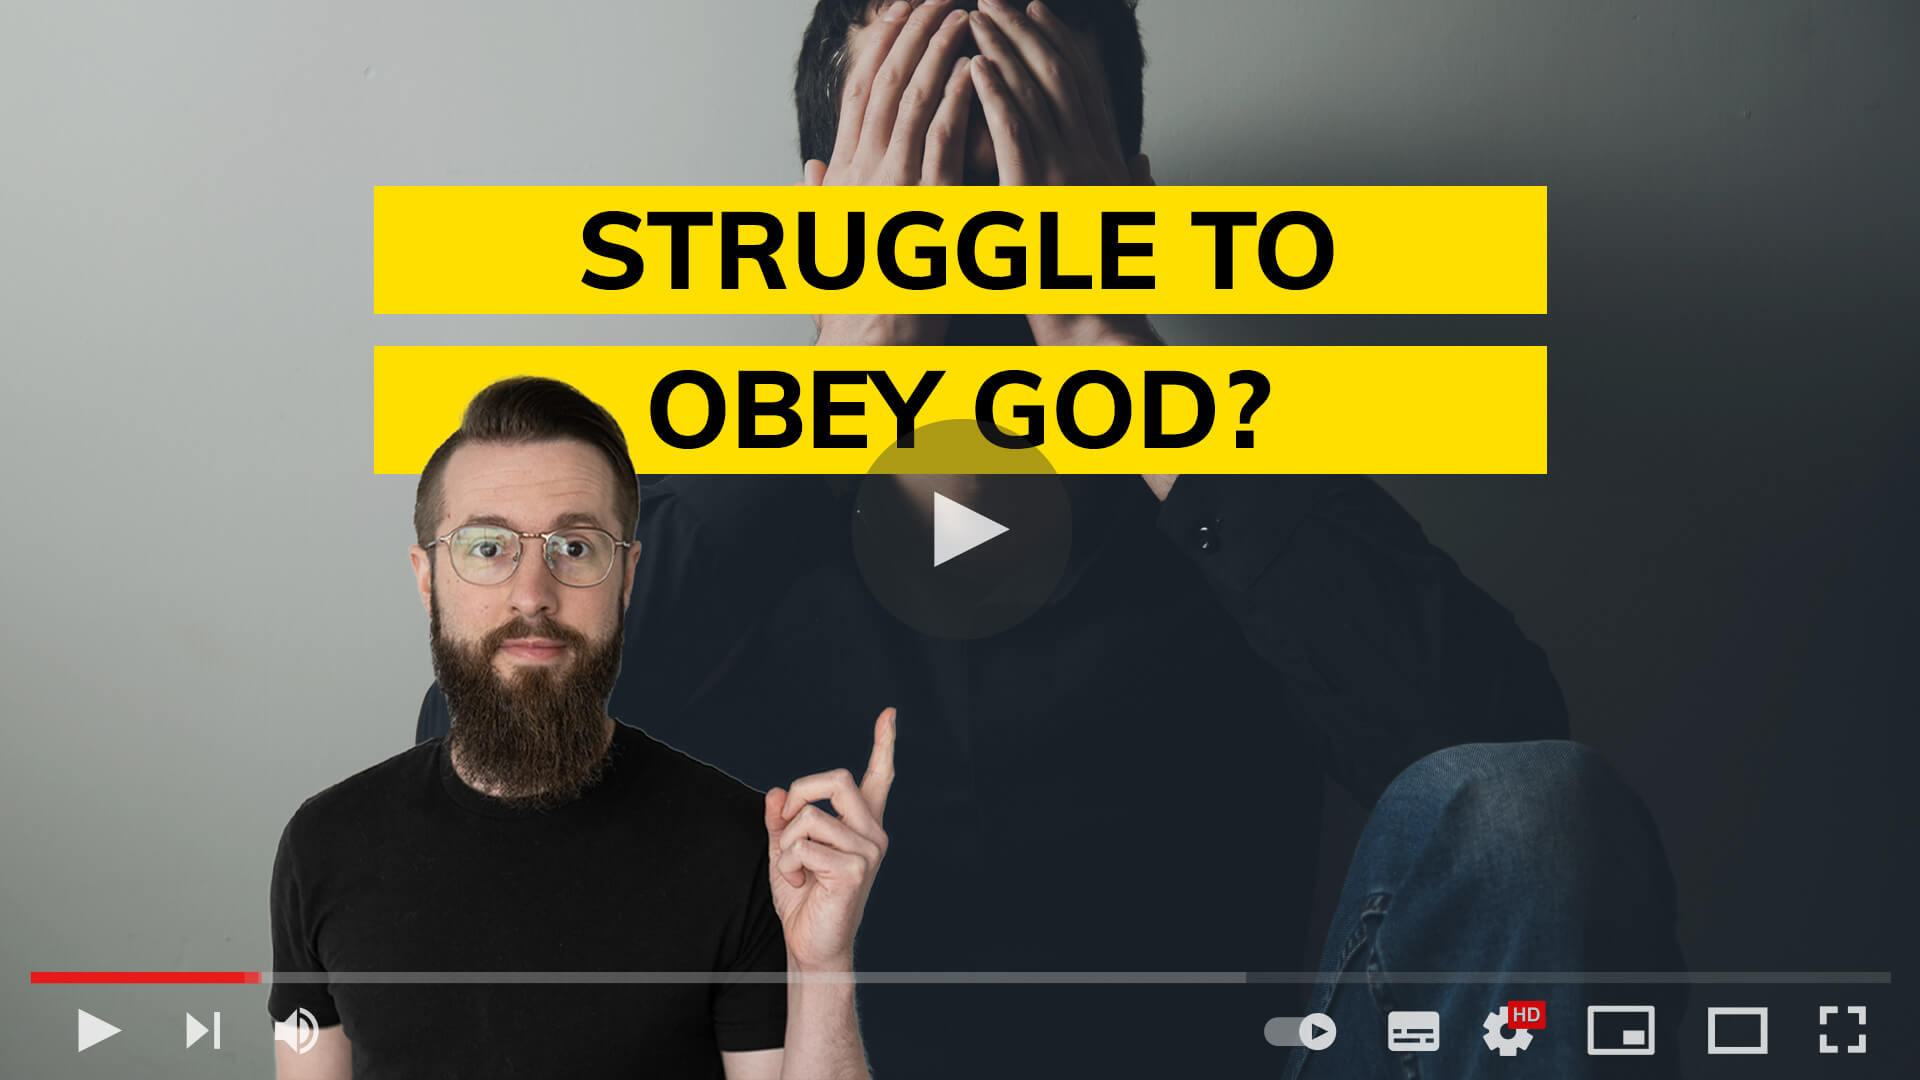 Struggle to obey God?